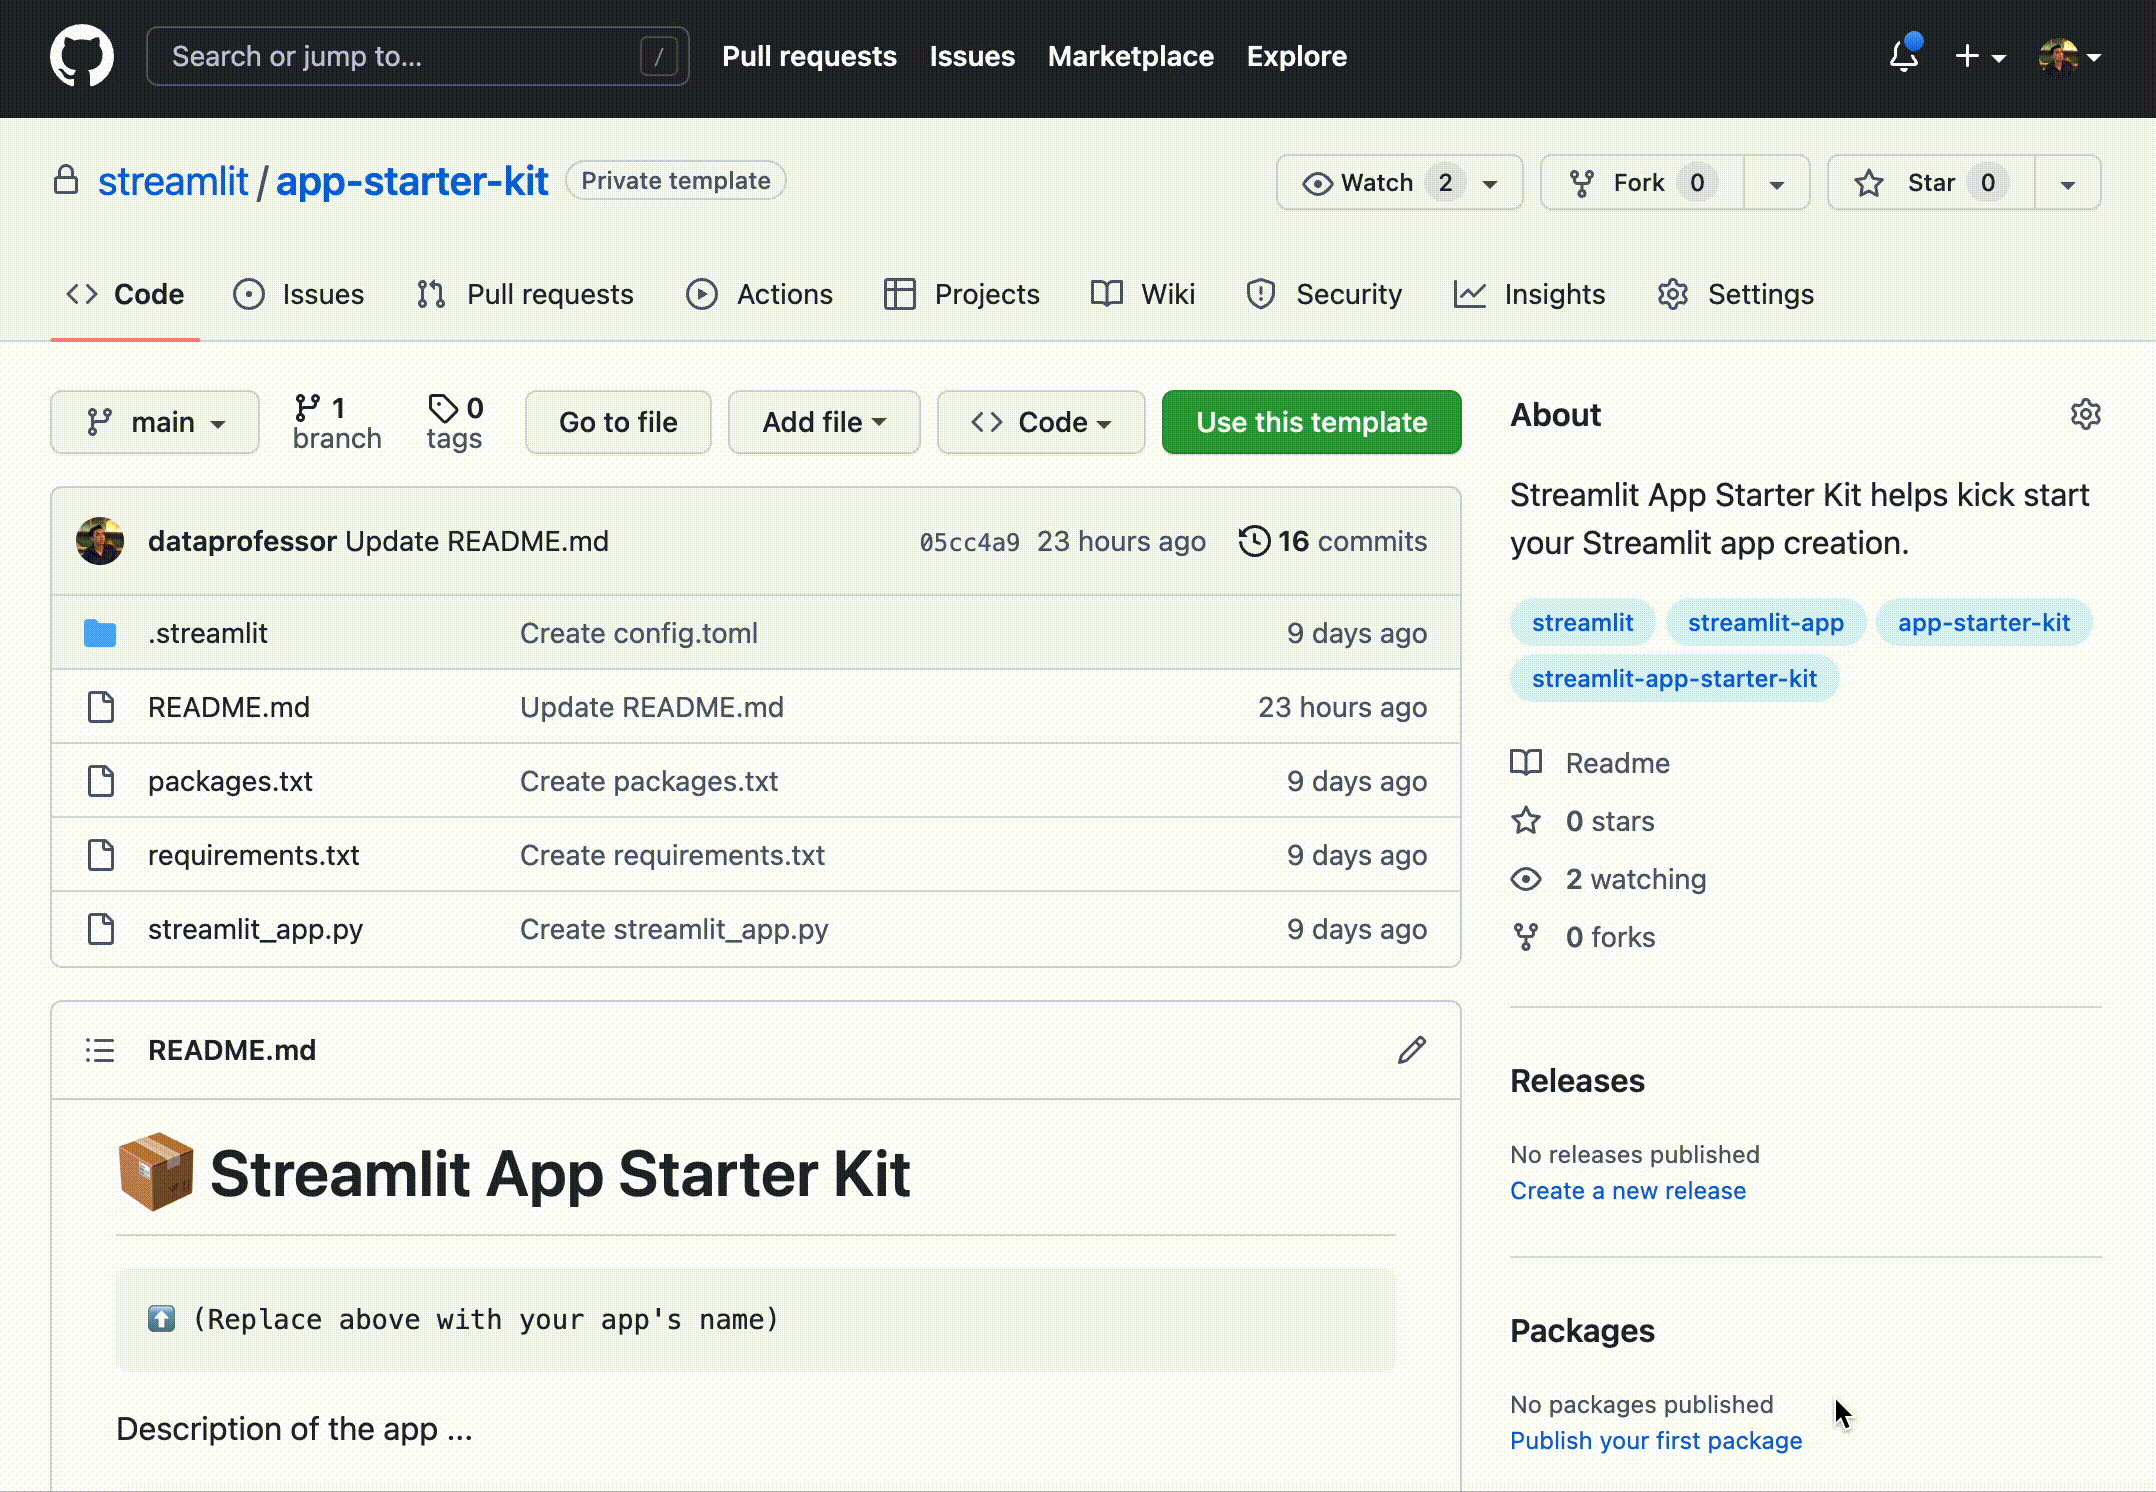 streamlit-app-starter-kit-22Sep2022